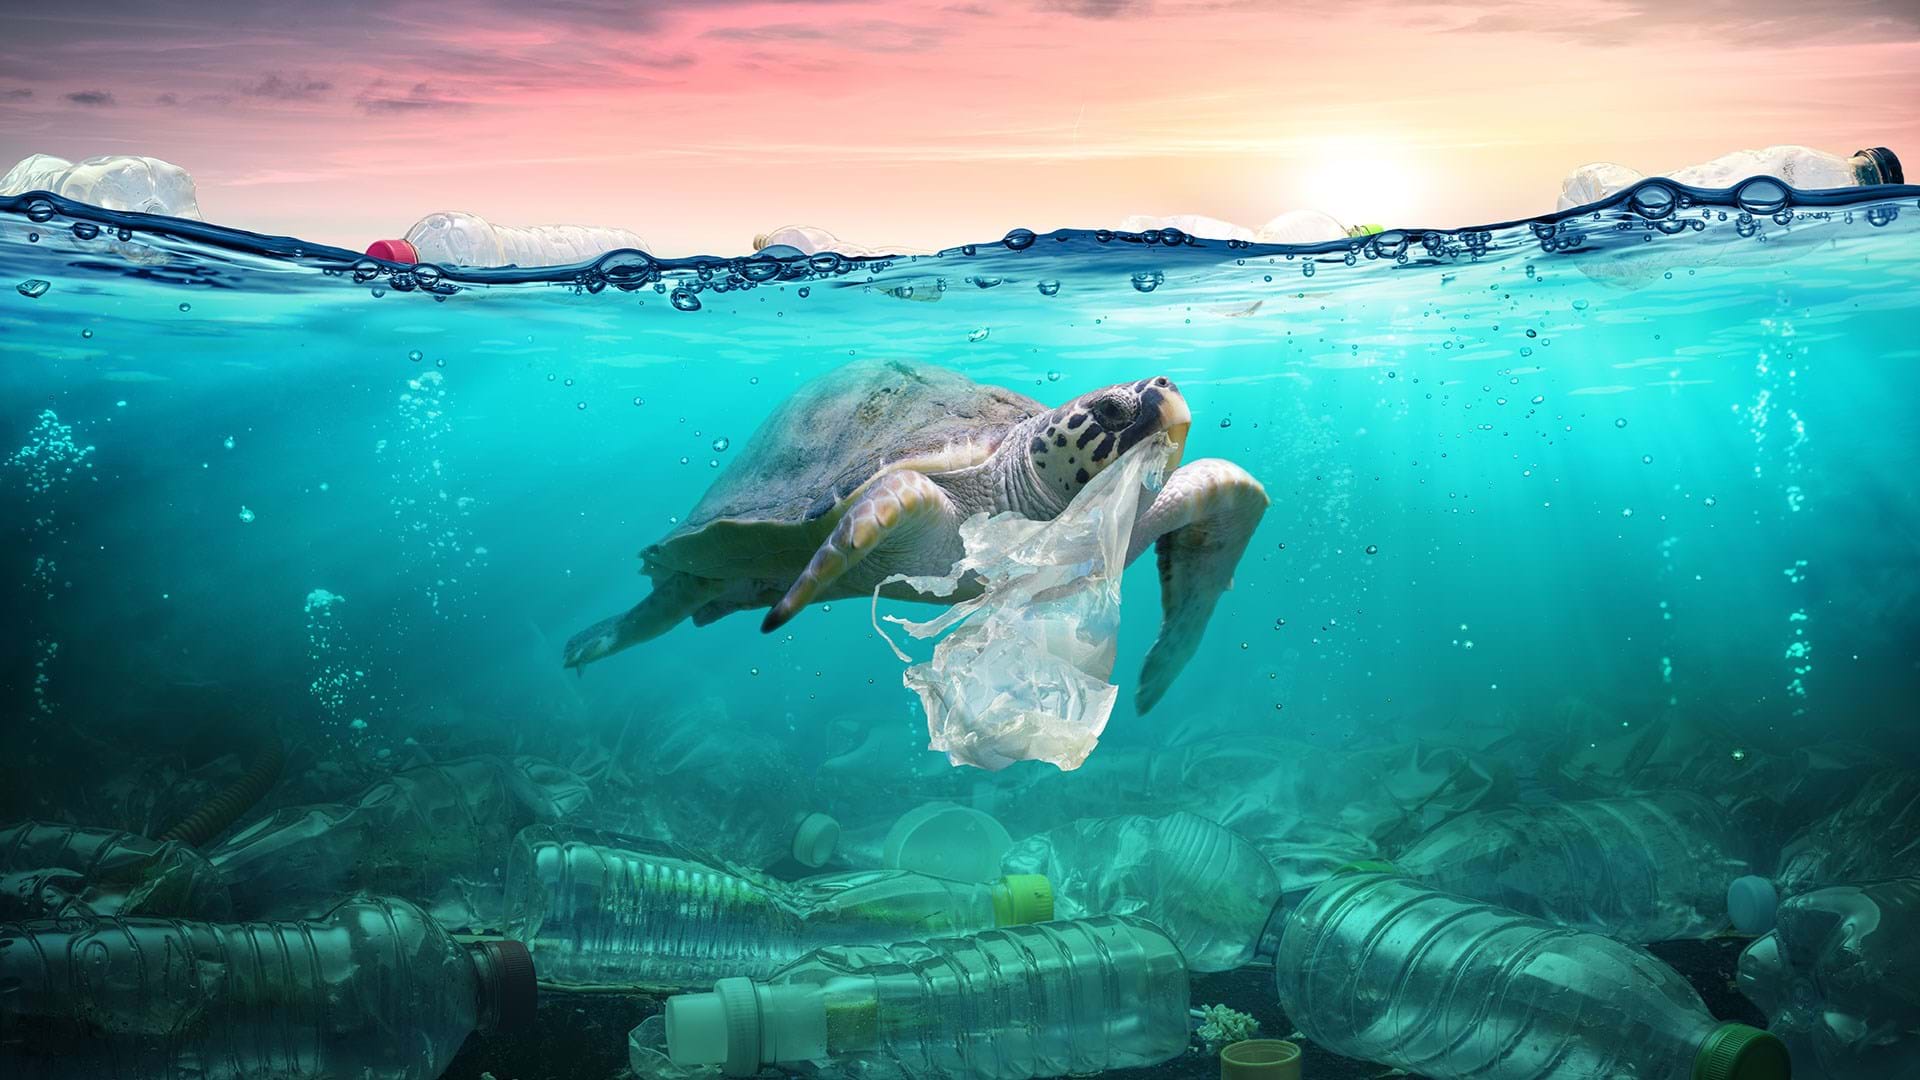 100 Plastic In The Ocean Statistics Facts 2020